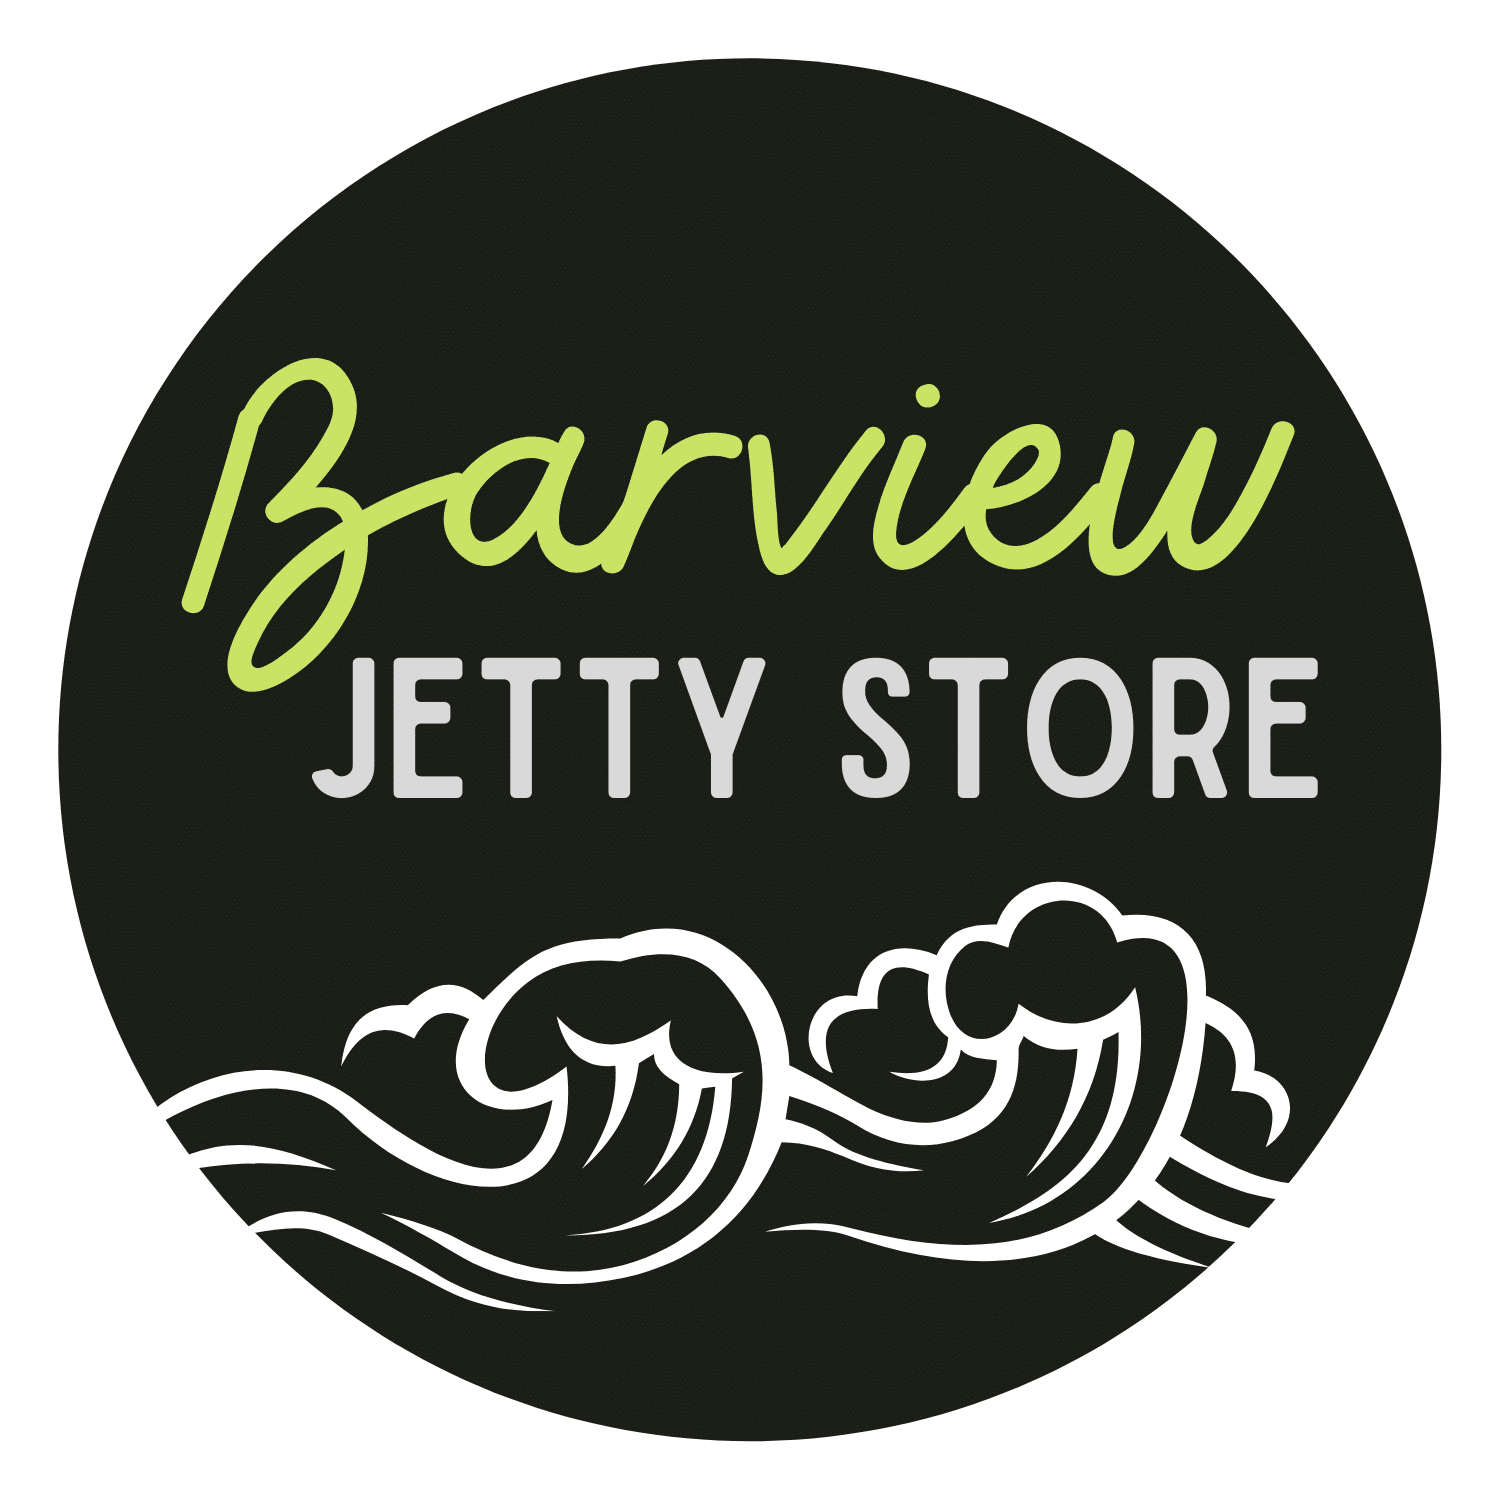 Barview Jetty Store | Tillamook Bay | Oregon Coast